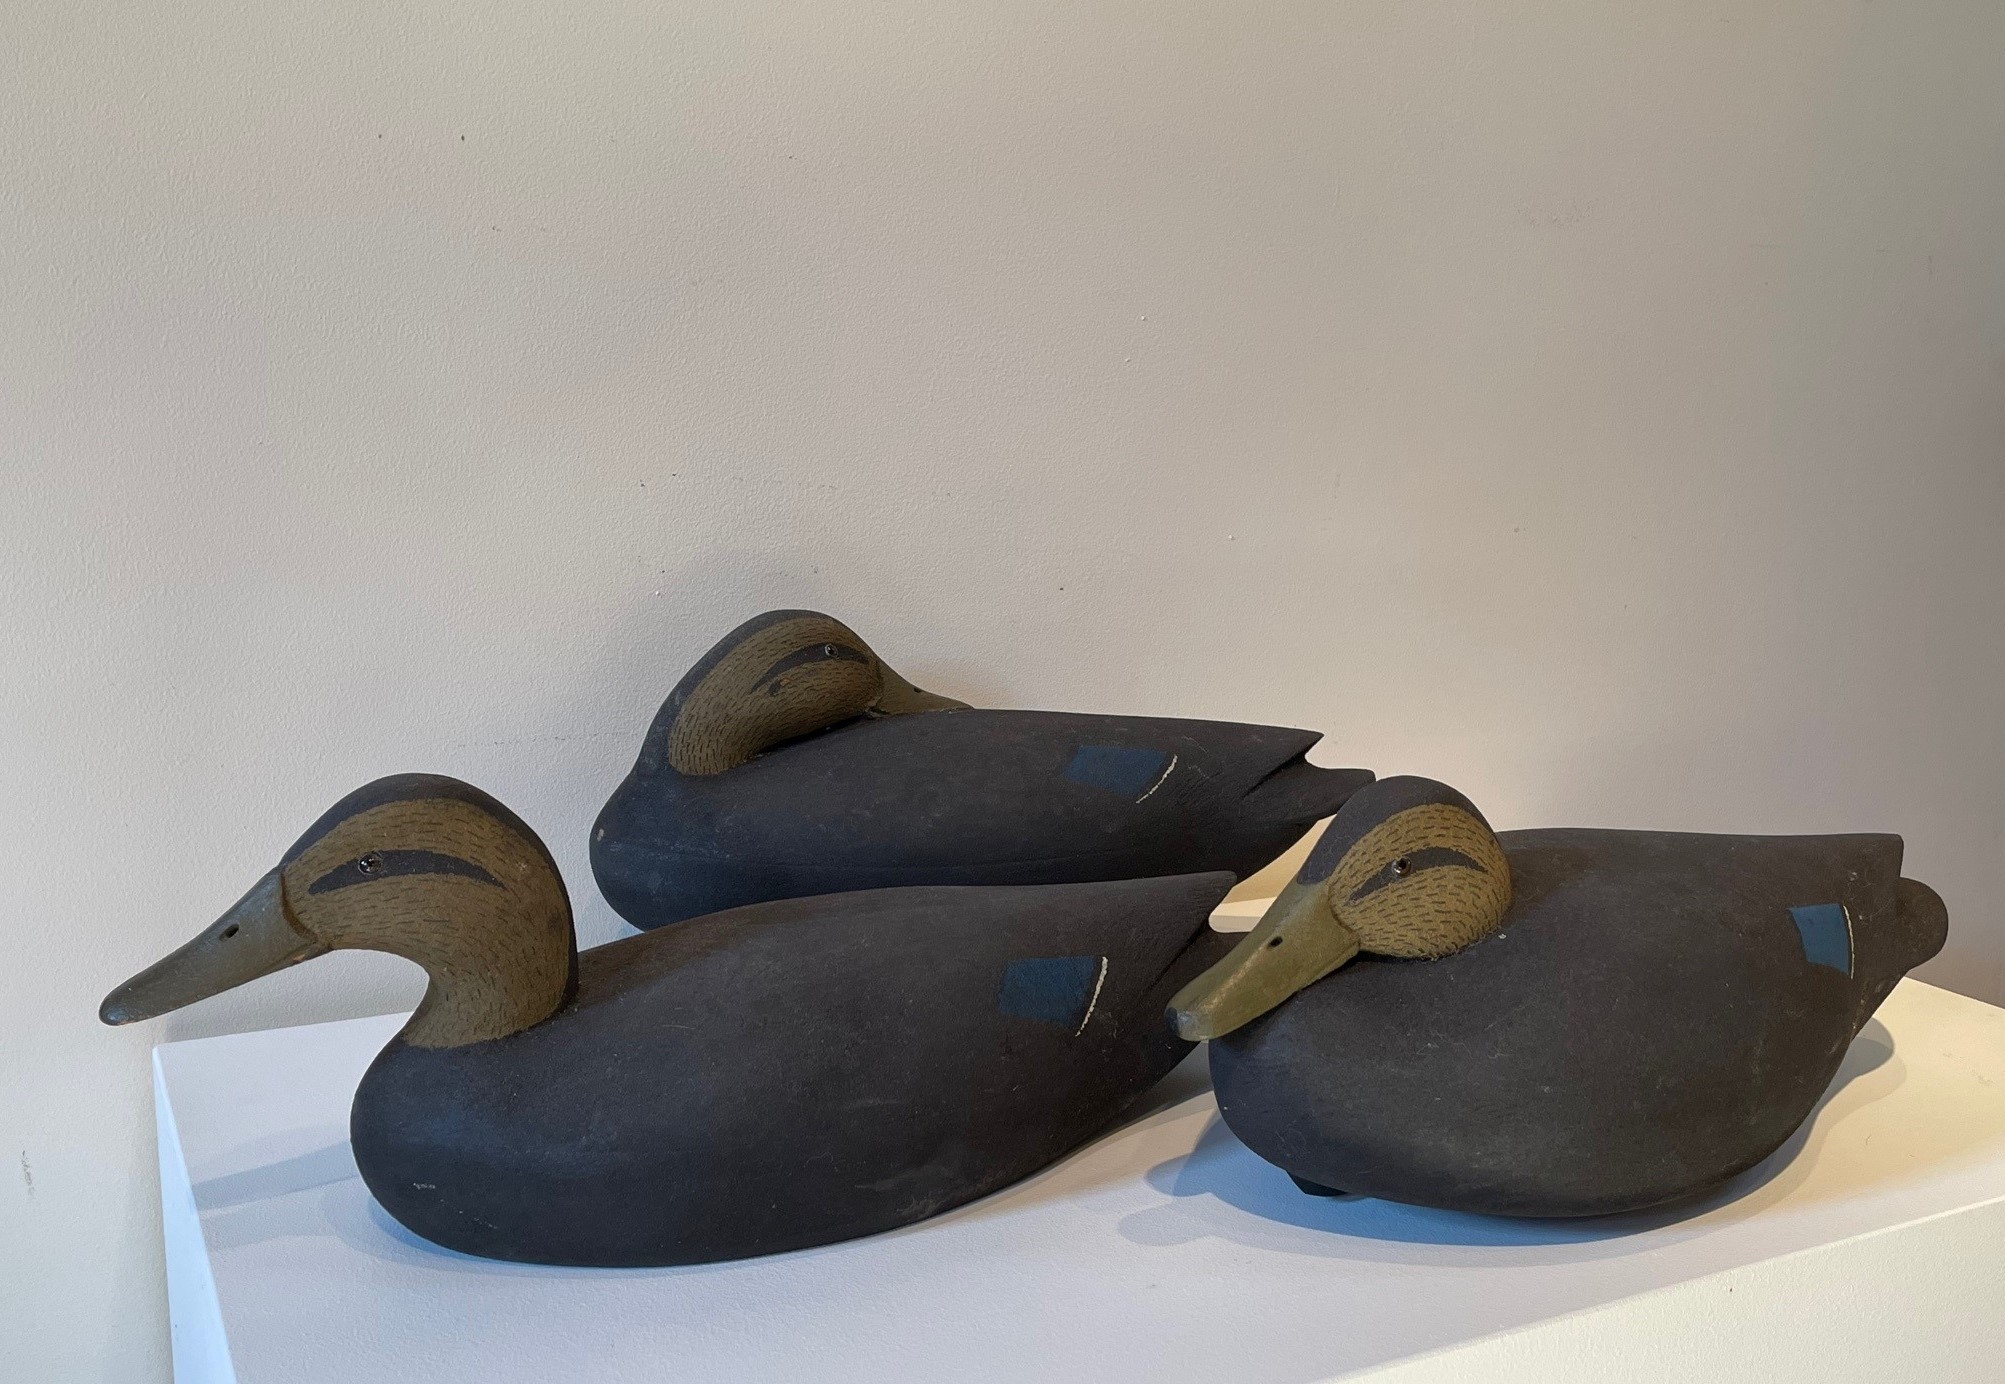 antique black duck decoys rel=